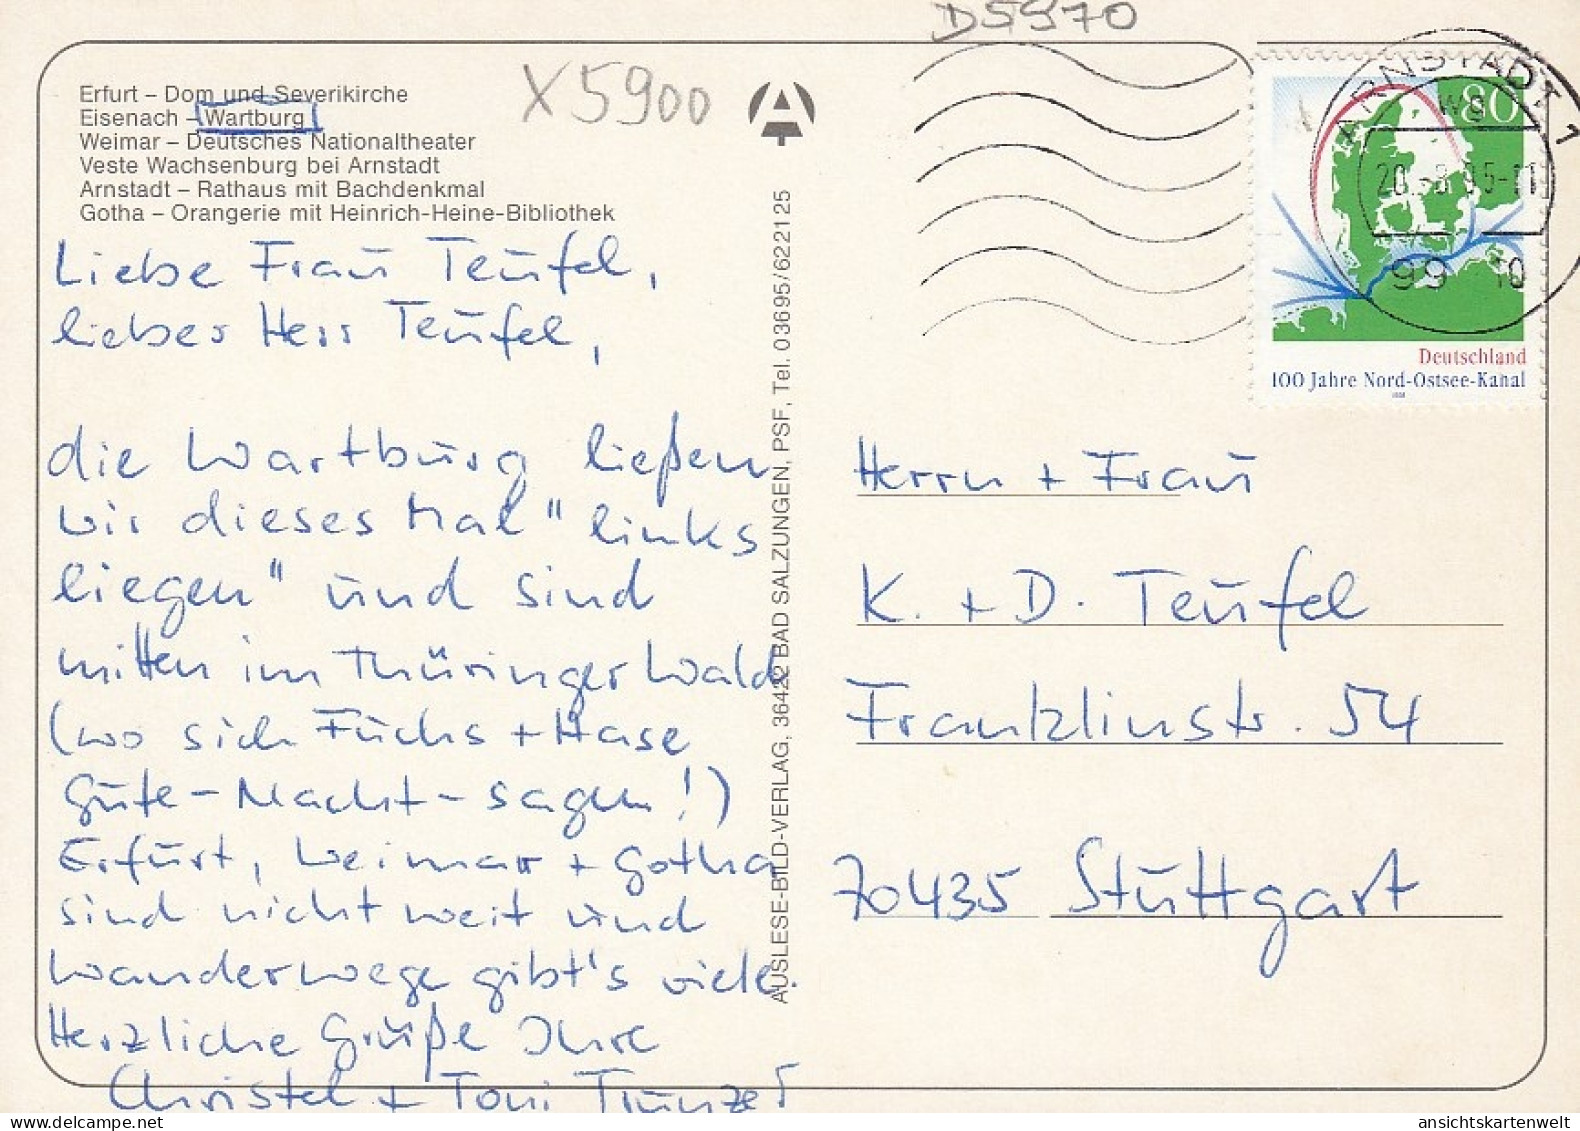 Gruss Aus Thüringen Mehrbildkarte Gl1995 #D5970 - Other & Unclassified